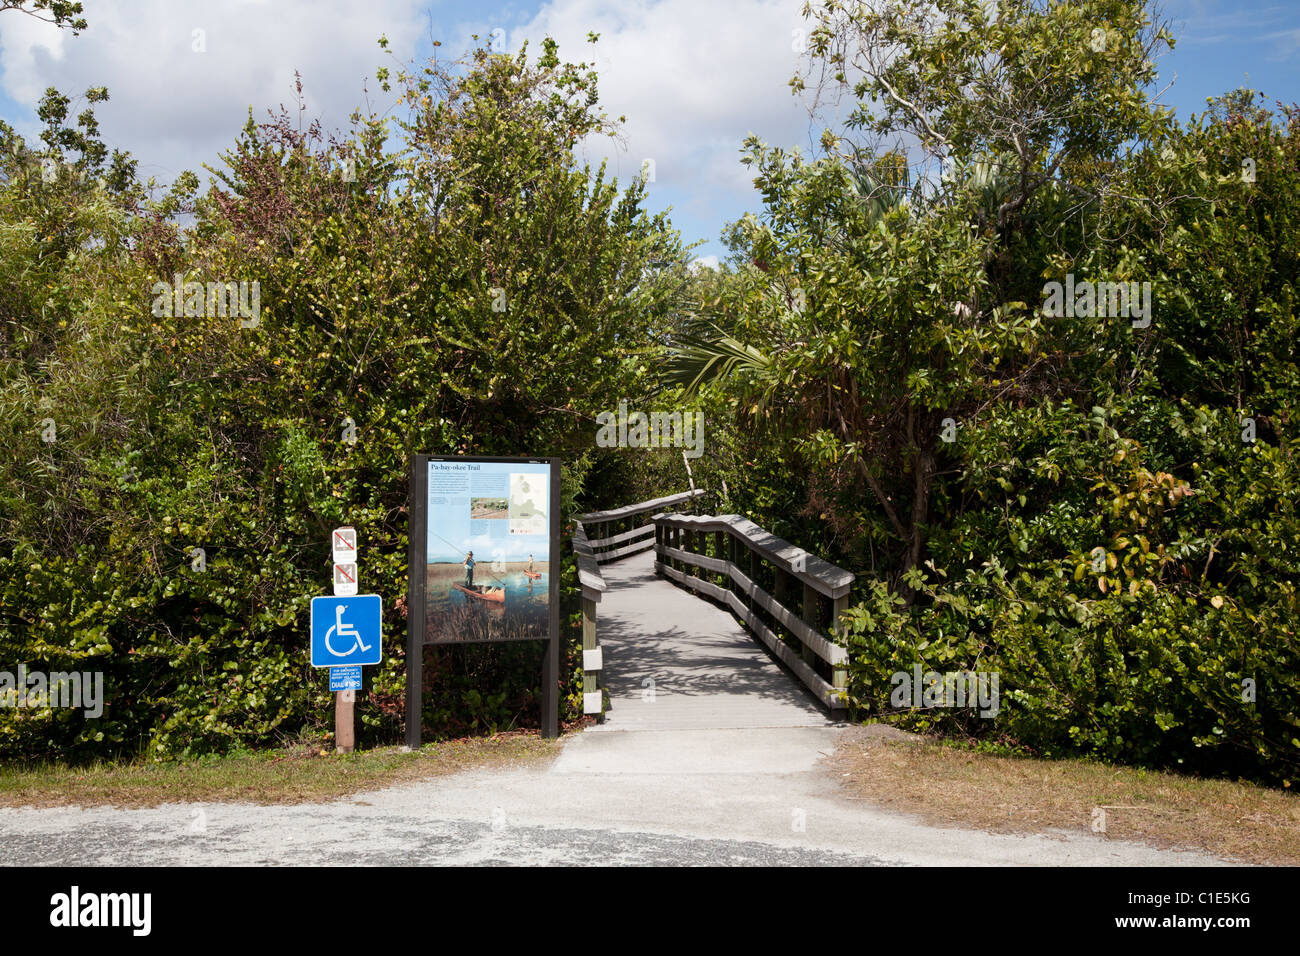 Entrée de Pa-hay-okee trail, Parc National des Everglades, Florida, USA Banque D'Images